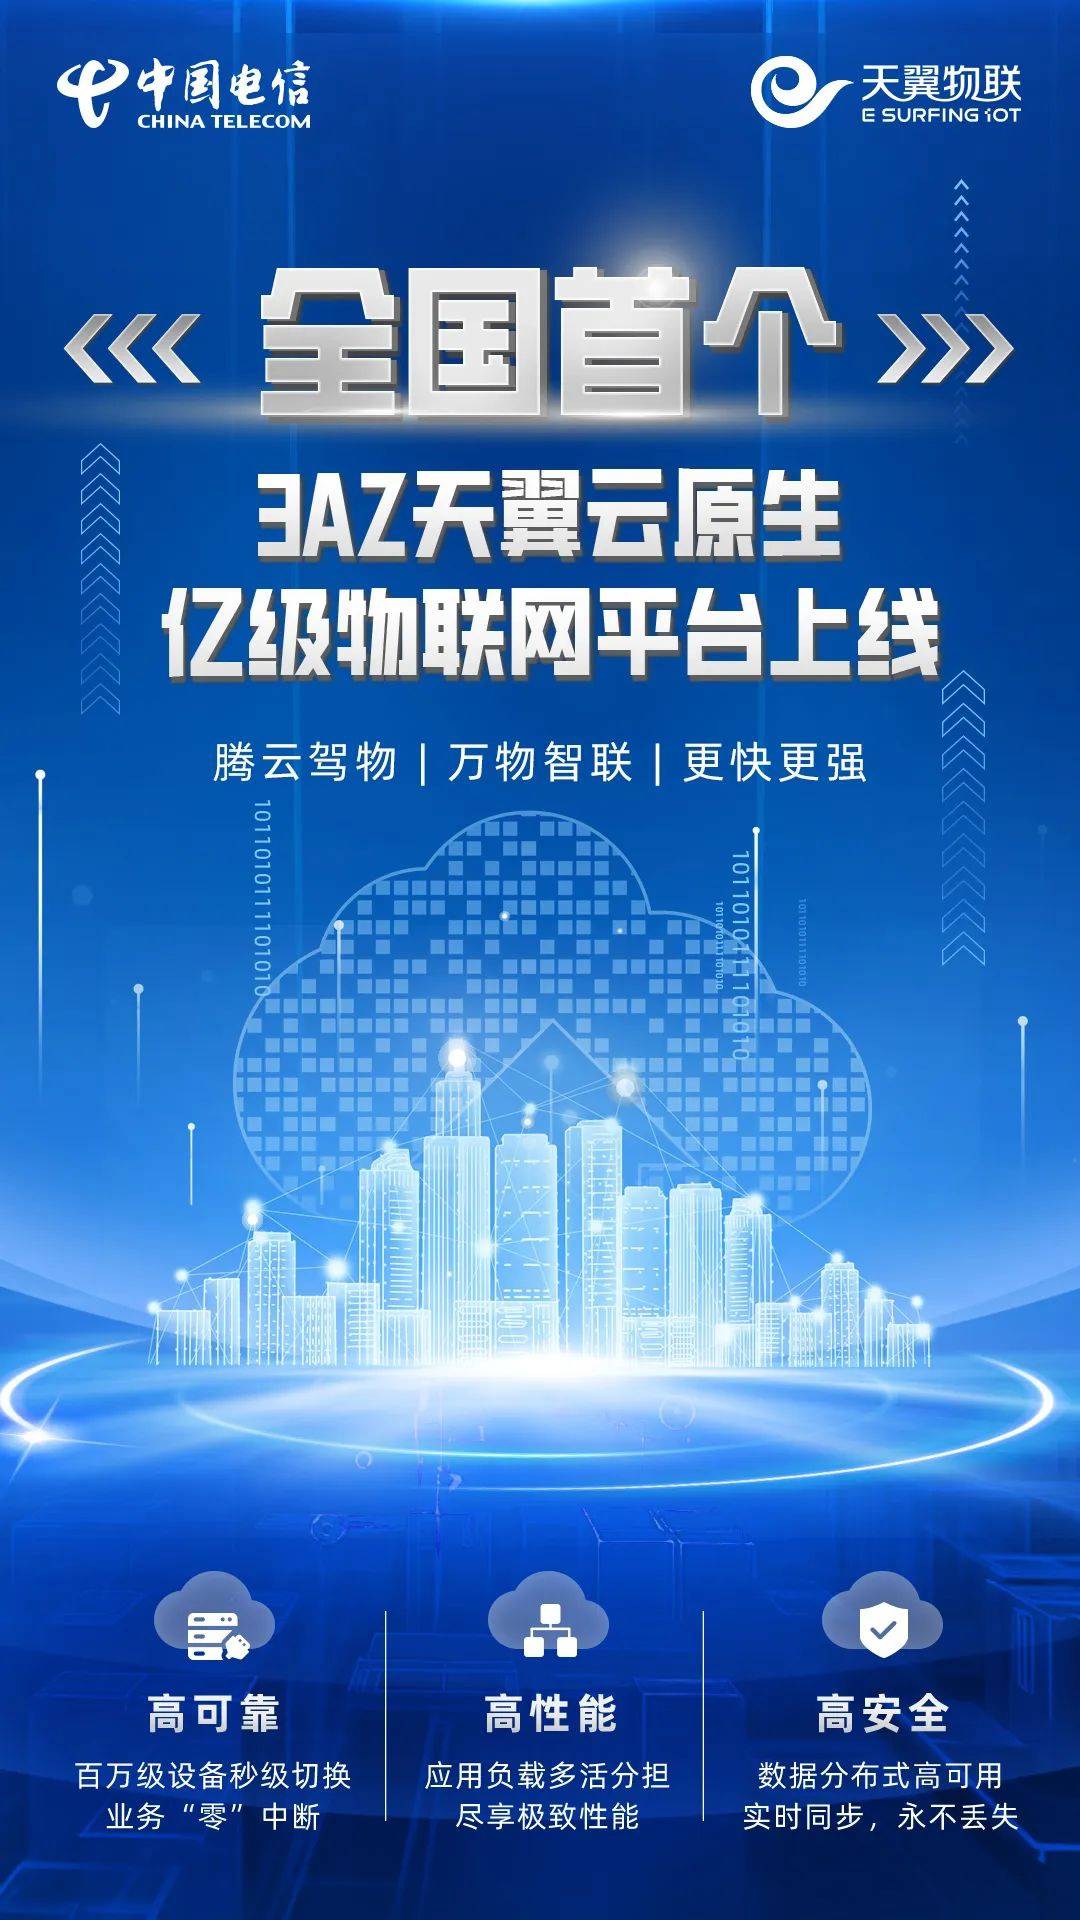 中国电信天翼物联发布首个3AZ亿级物联网平台 支持亿级超大规模物联网终端安全可靠接入